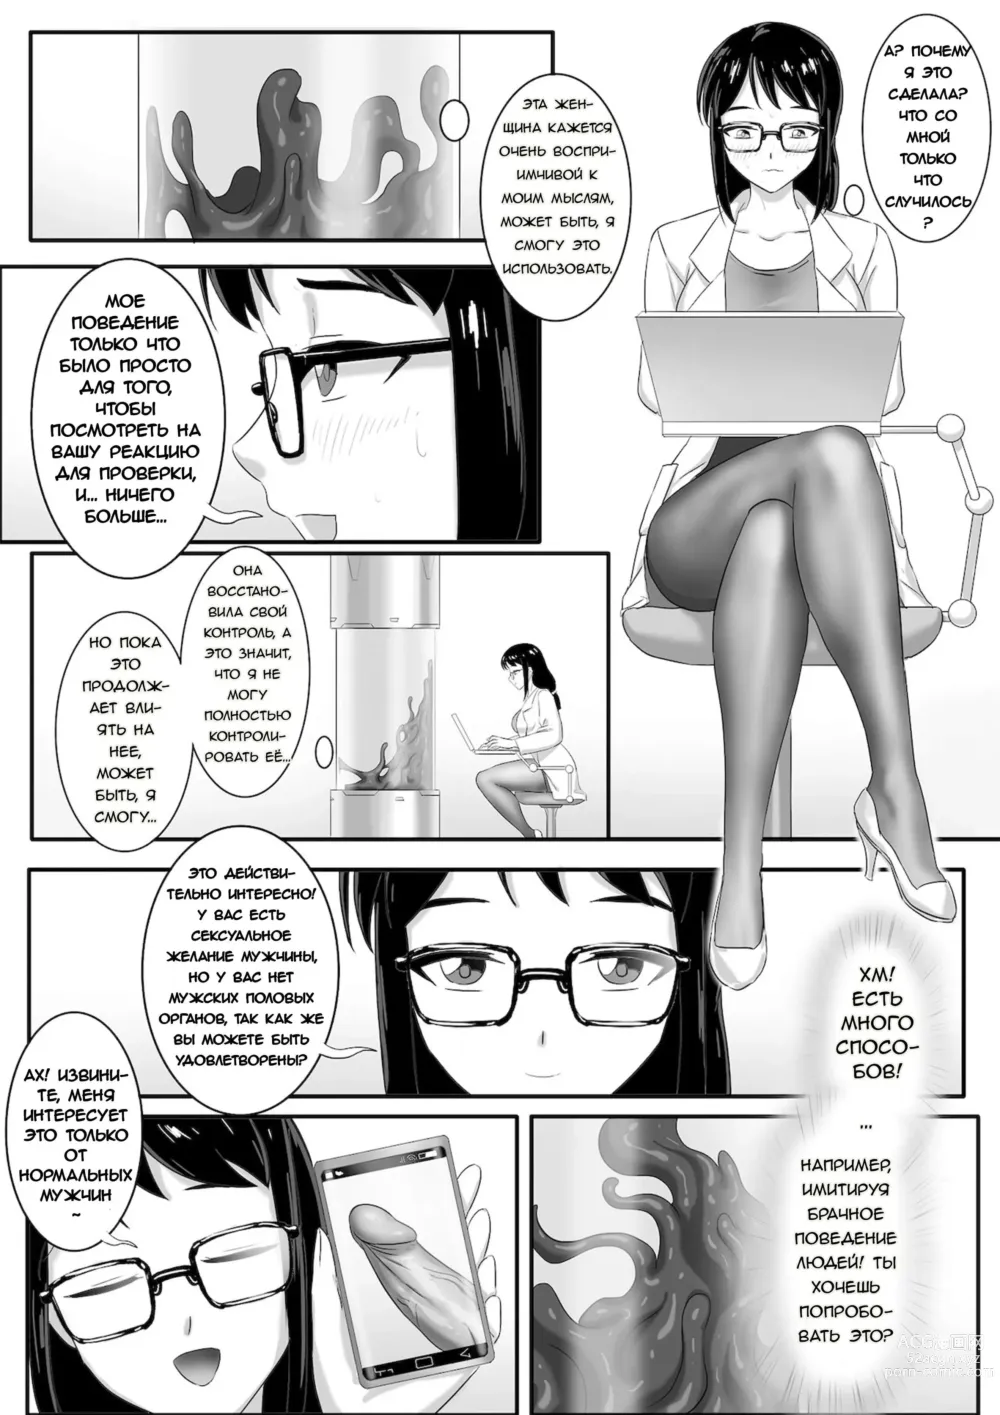 Page 7 of manga Переведено на русском